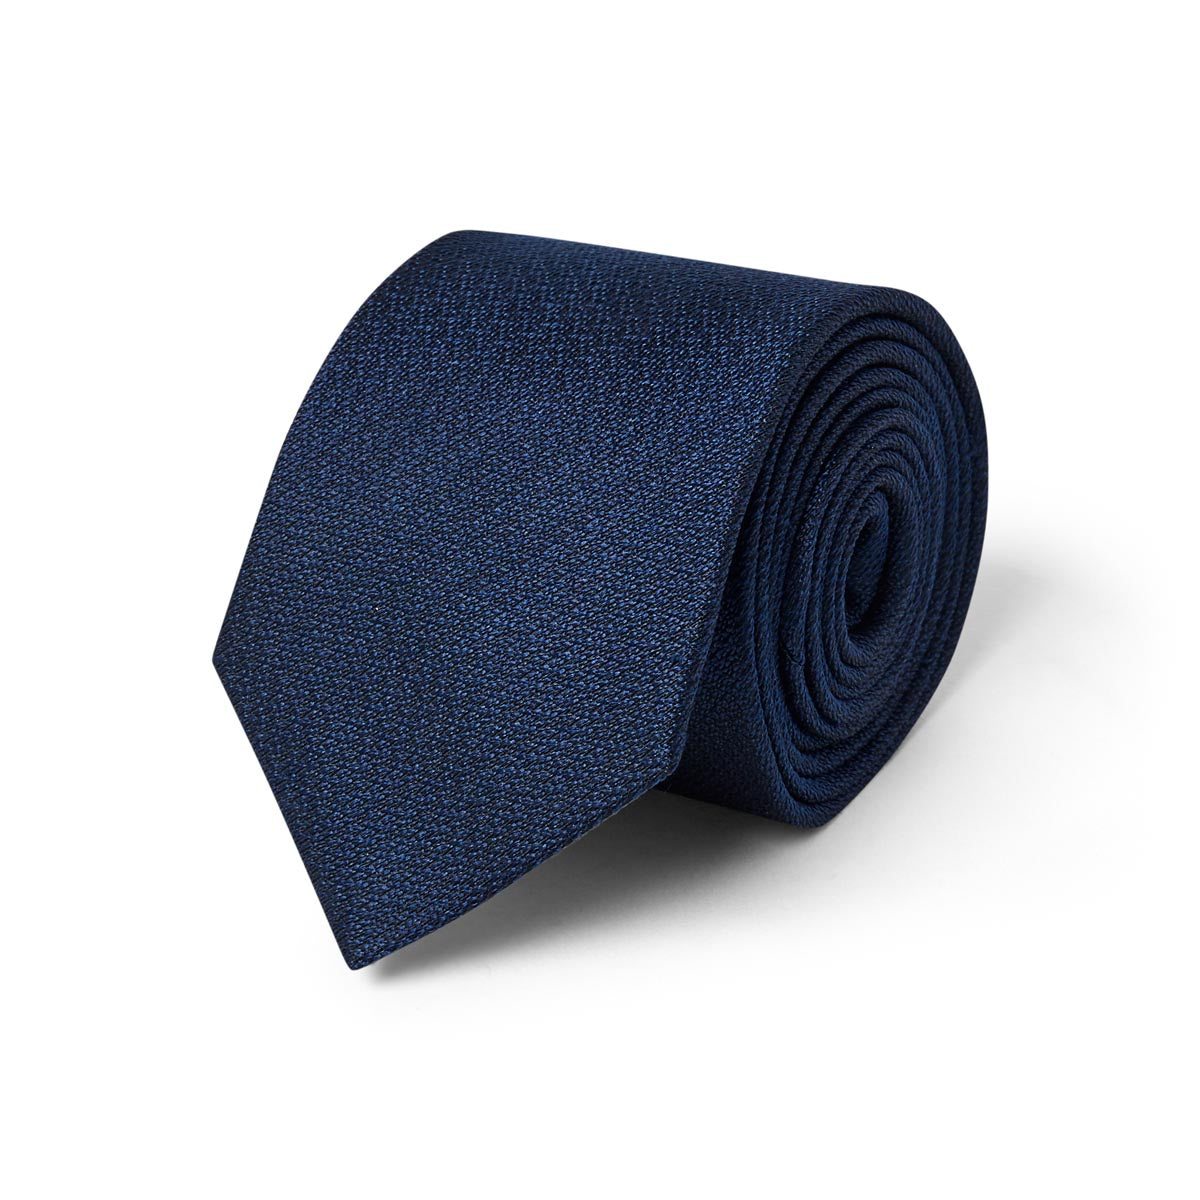 Cravate texturée satin bleu marine